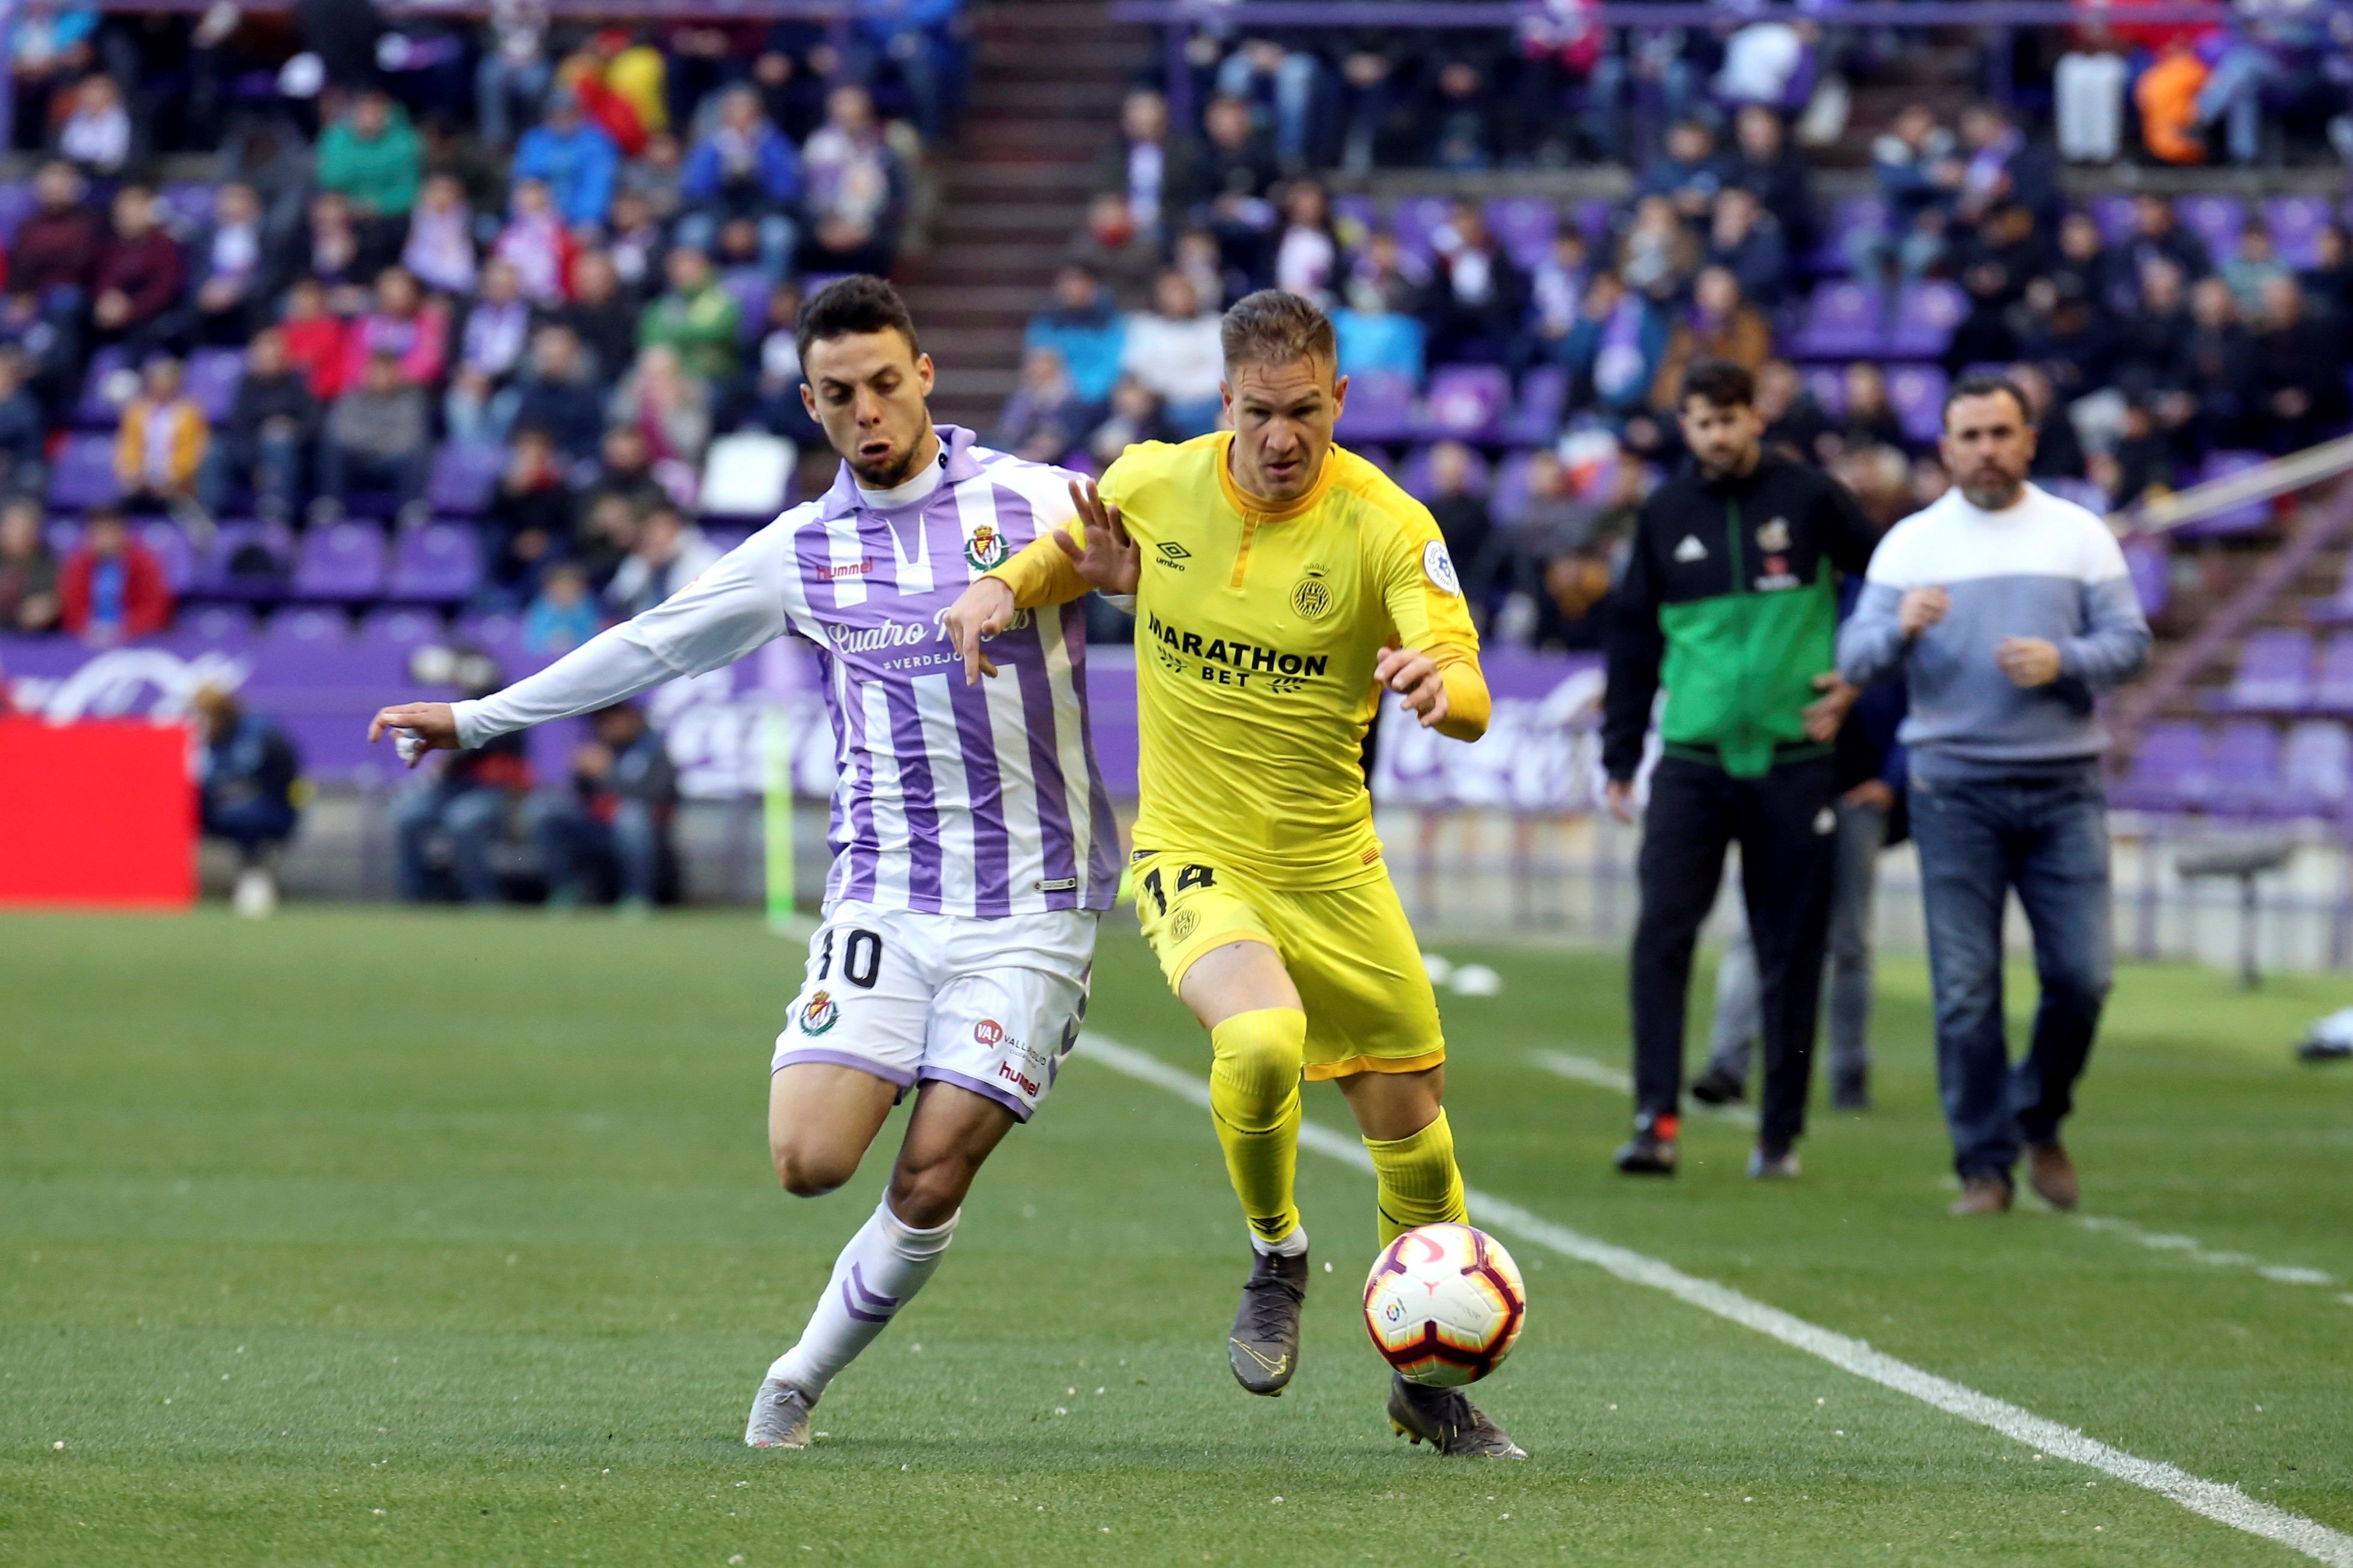 Més esperances per al Girona: Obren expedient al Valladolid i a dos dels seus jugadors